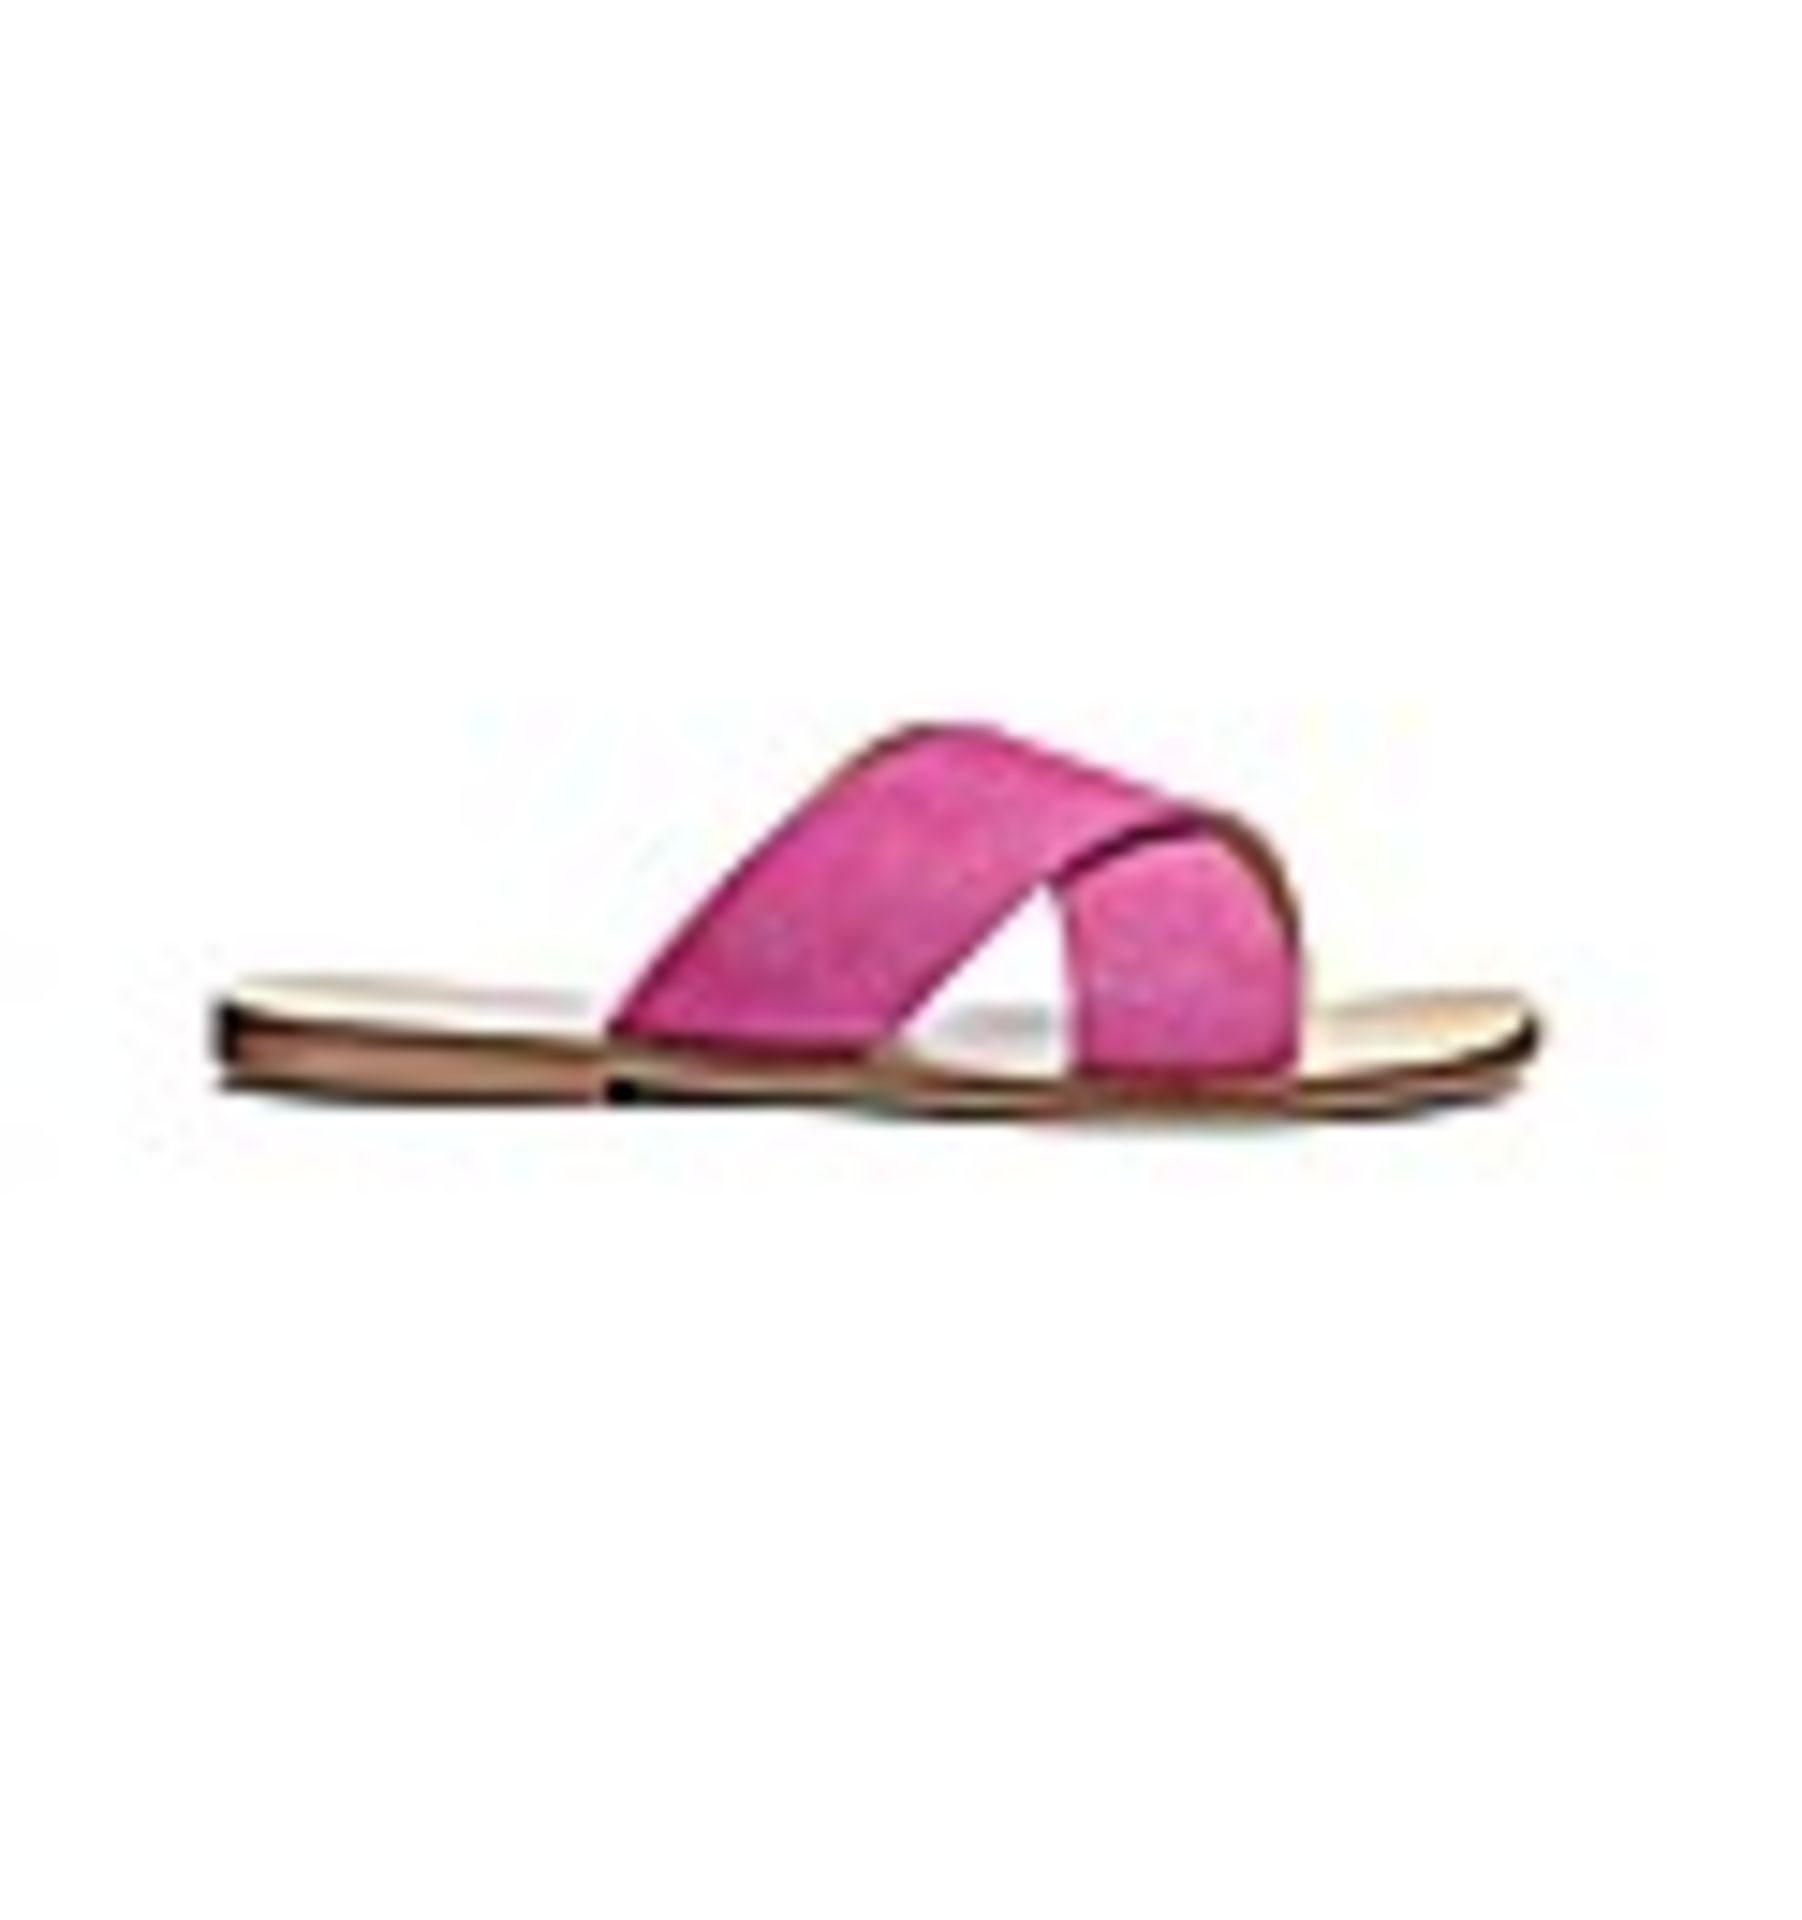 + VAT Brand New Pair Ladies Pink Mollie Ex Wide Sandals Size 4